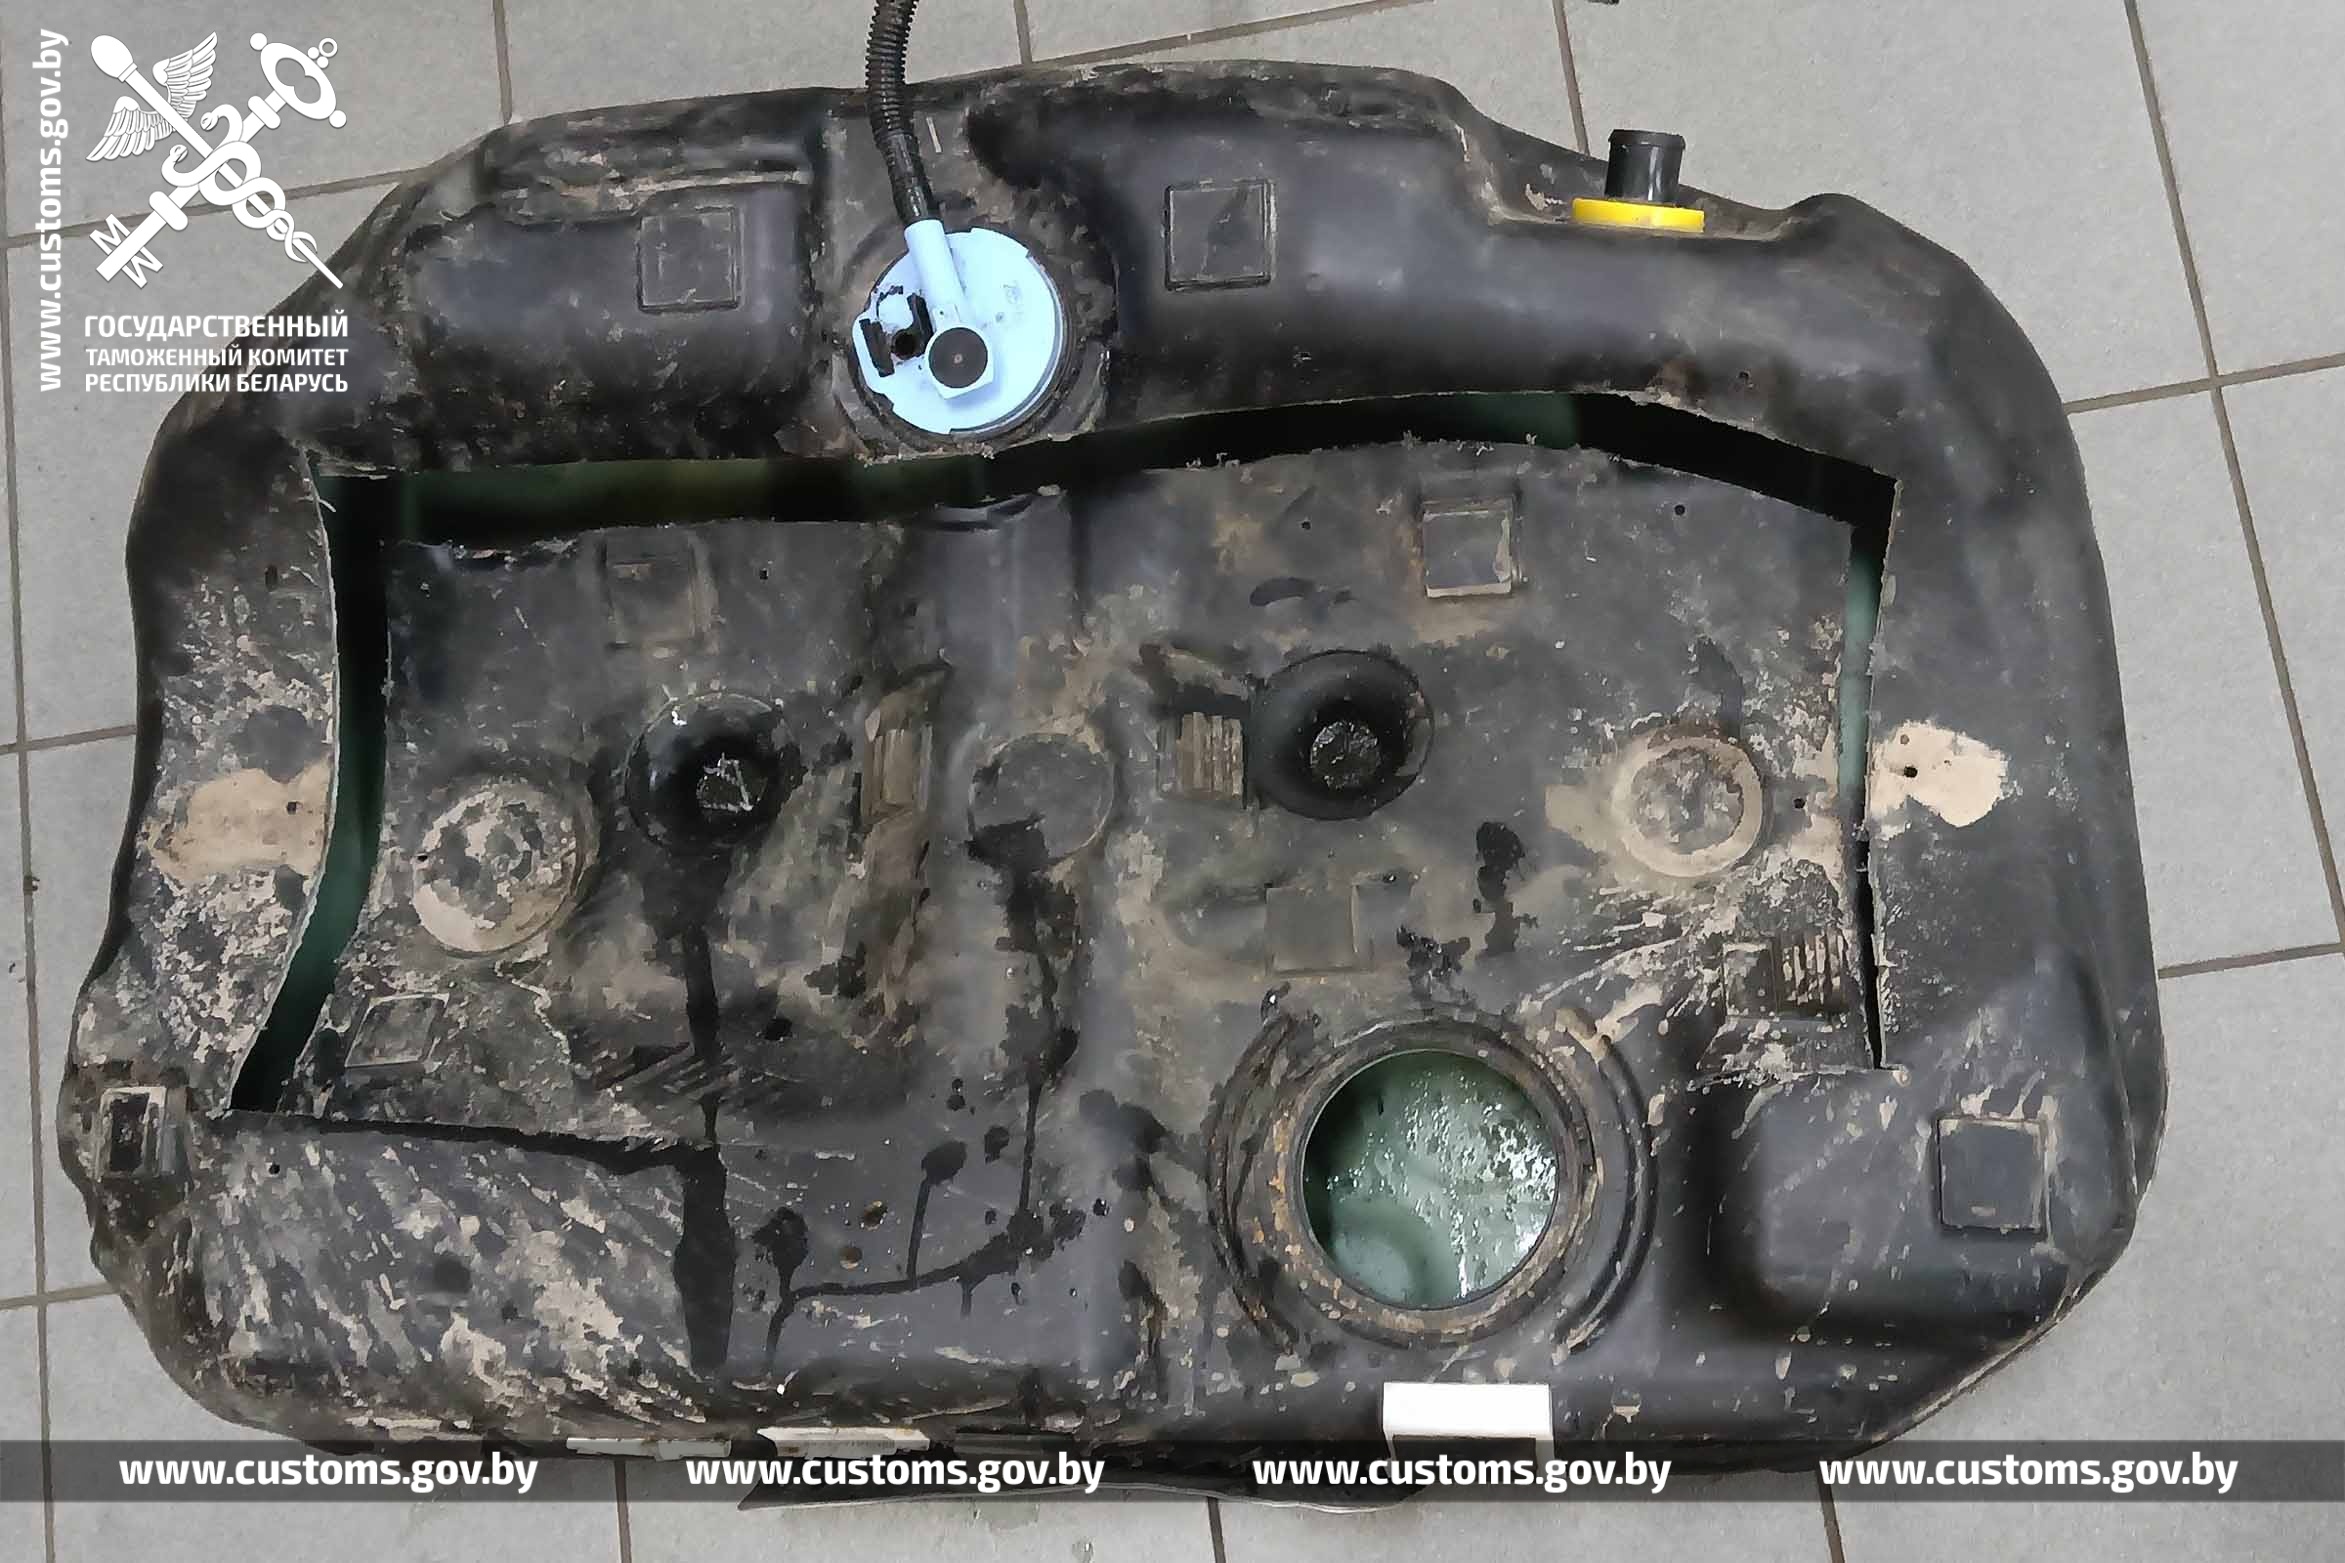 Брестская таможня обнаружила у гражданина Молдовы 25 кг мефедрона